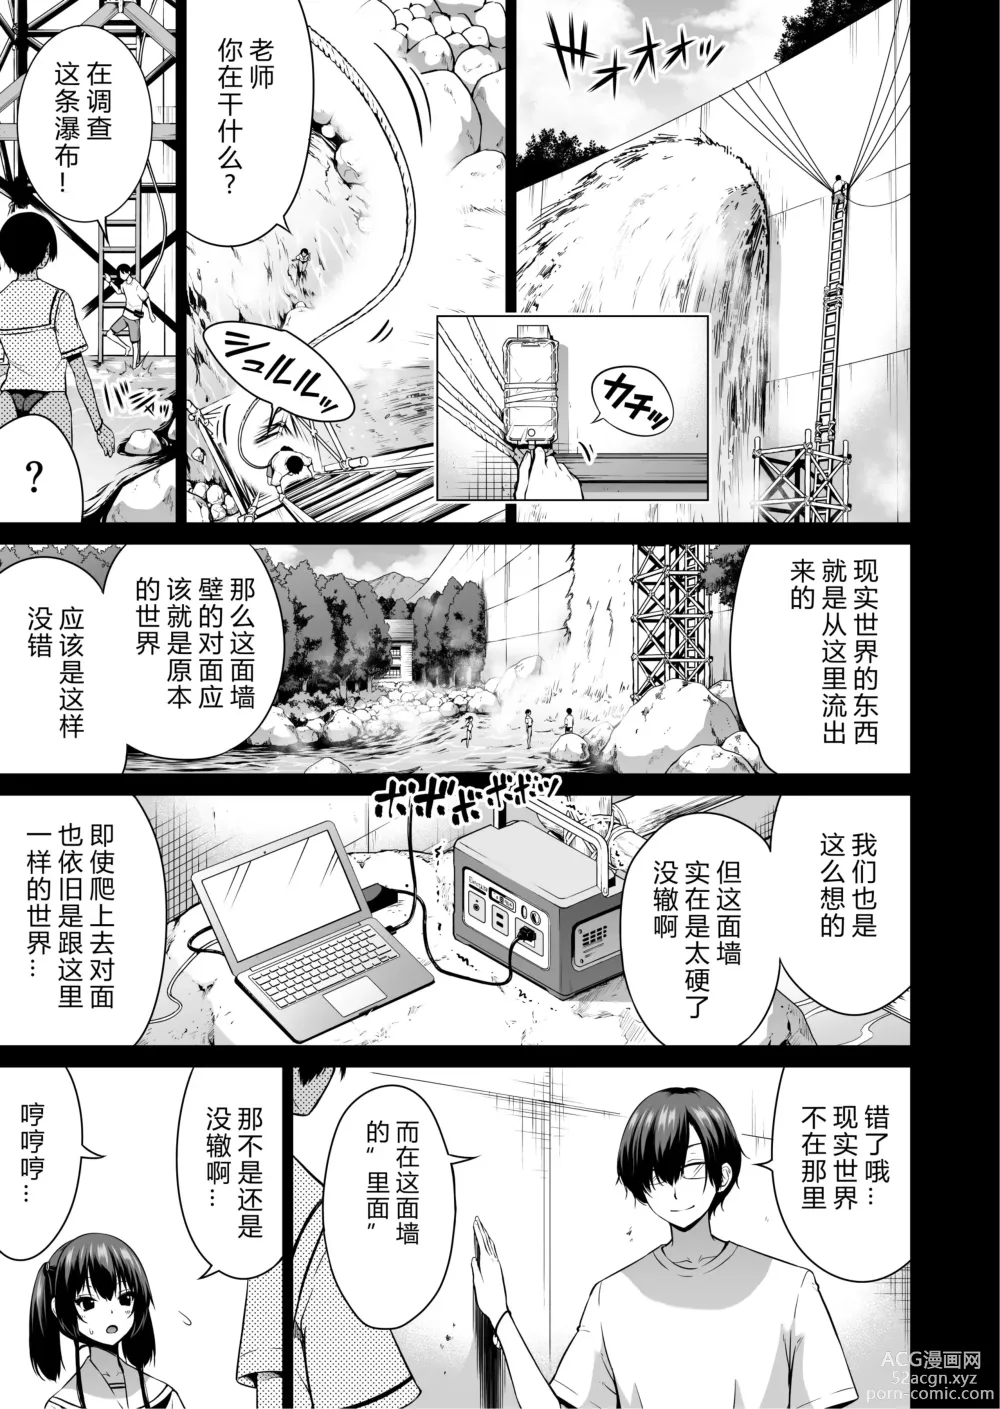 Page 2 of manga nanaka no rakuen7